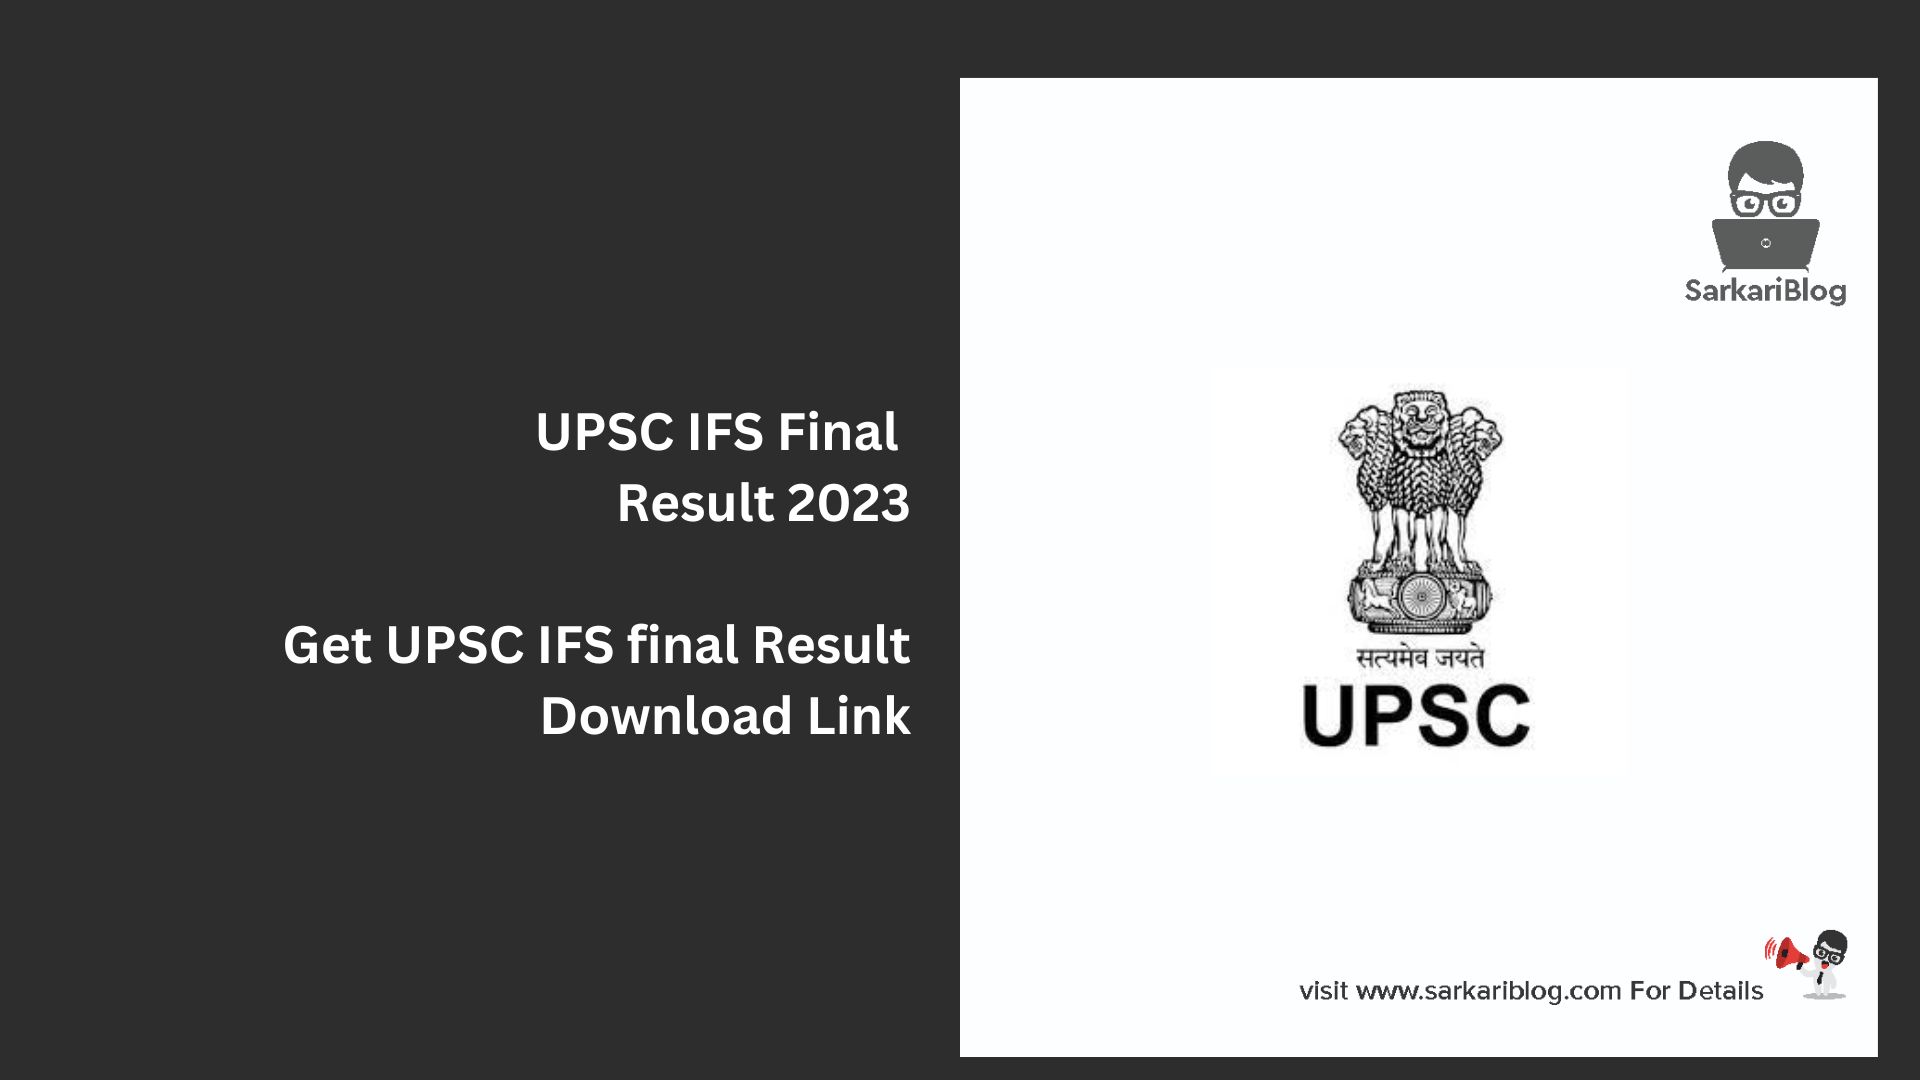 UPSC IFS Final Result 2023